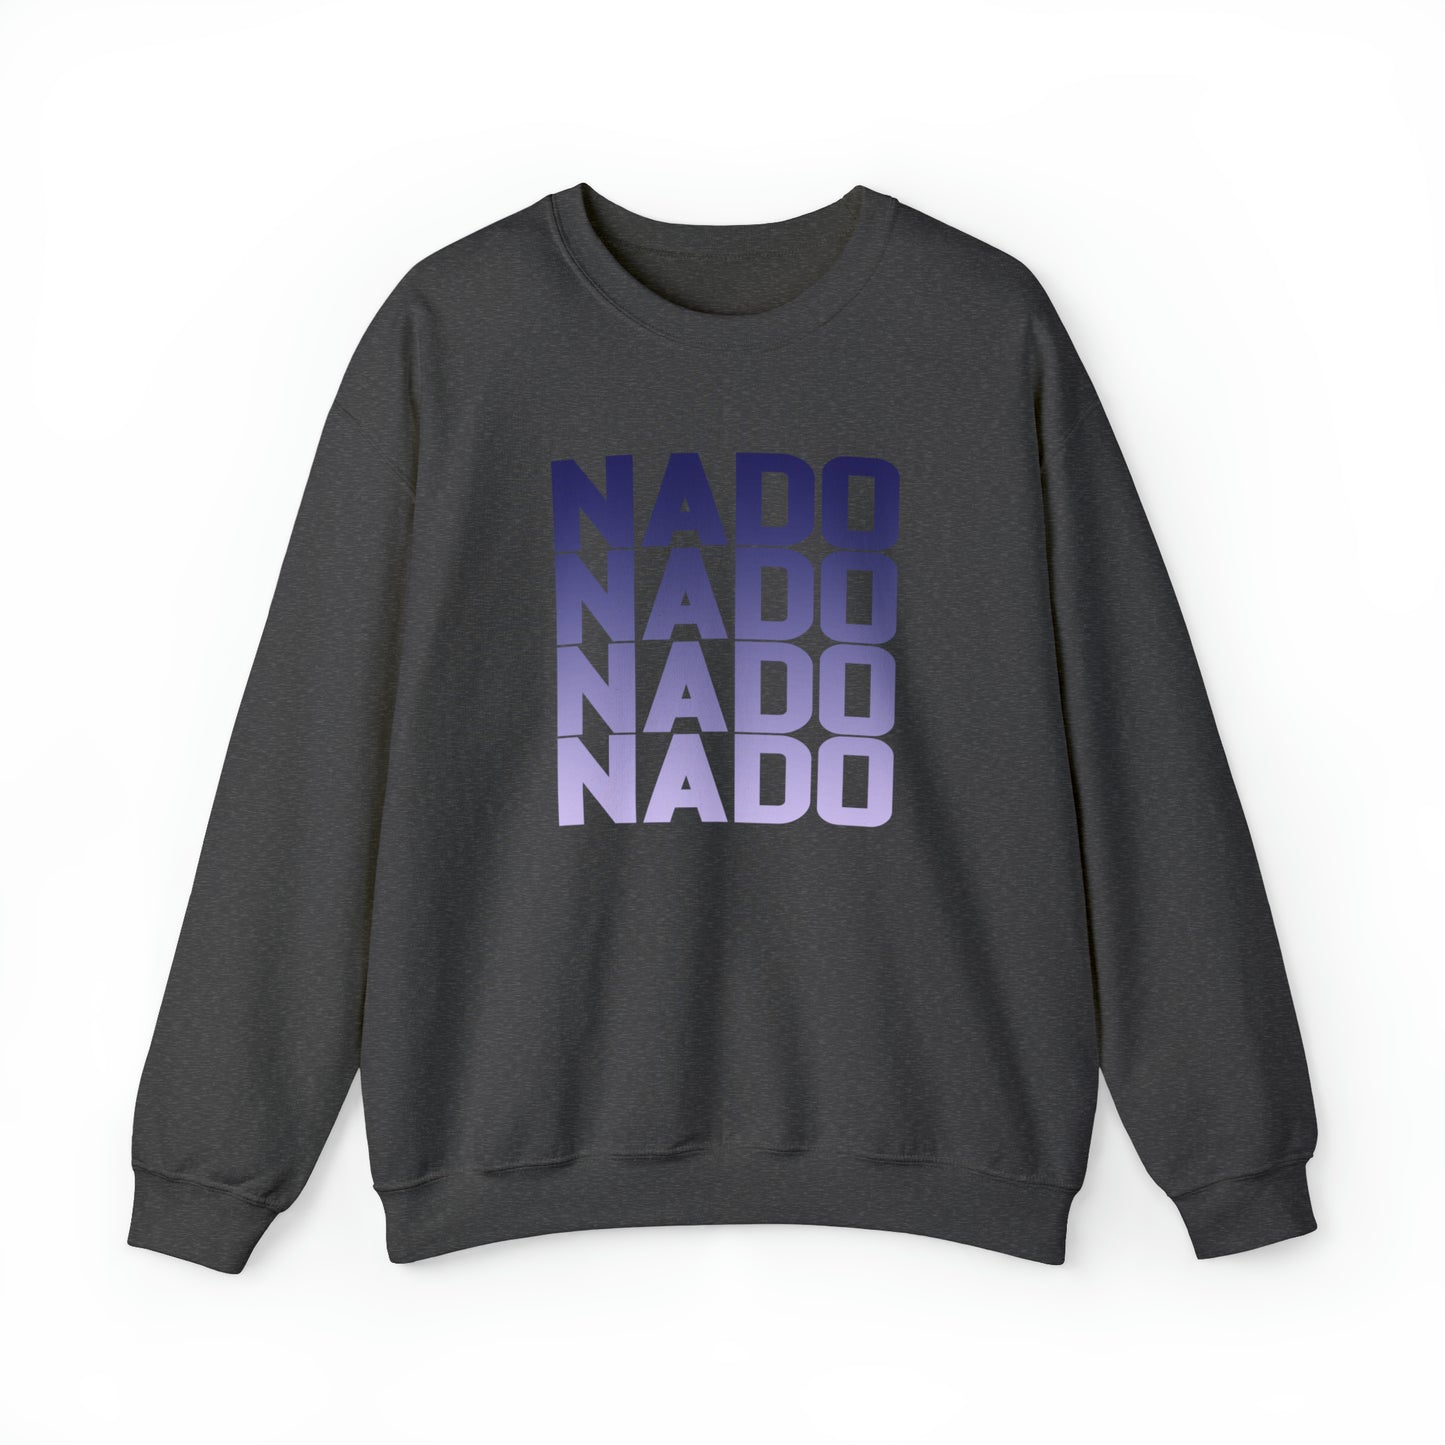 Nado x 4 - Bella Canvas Crewneck Sweatshirt